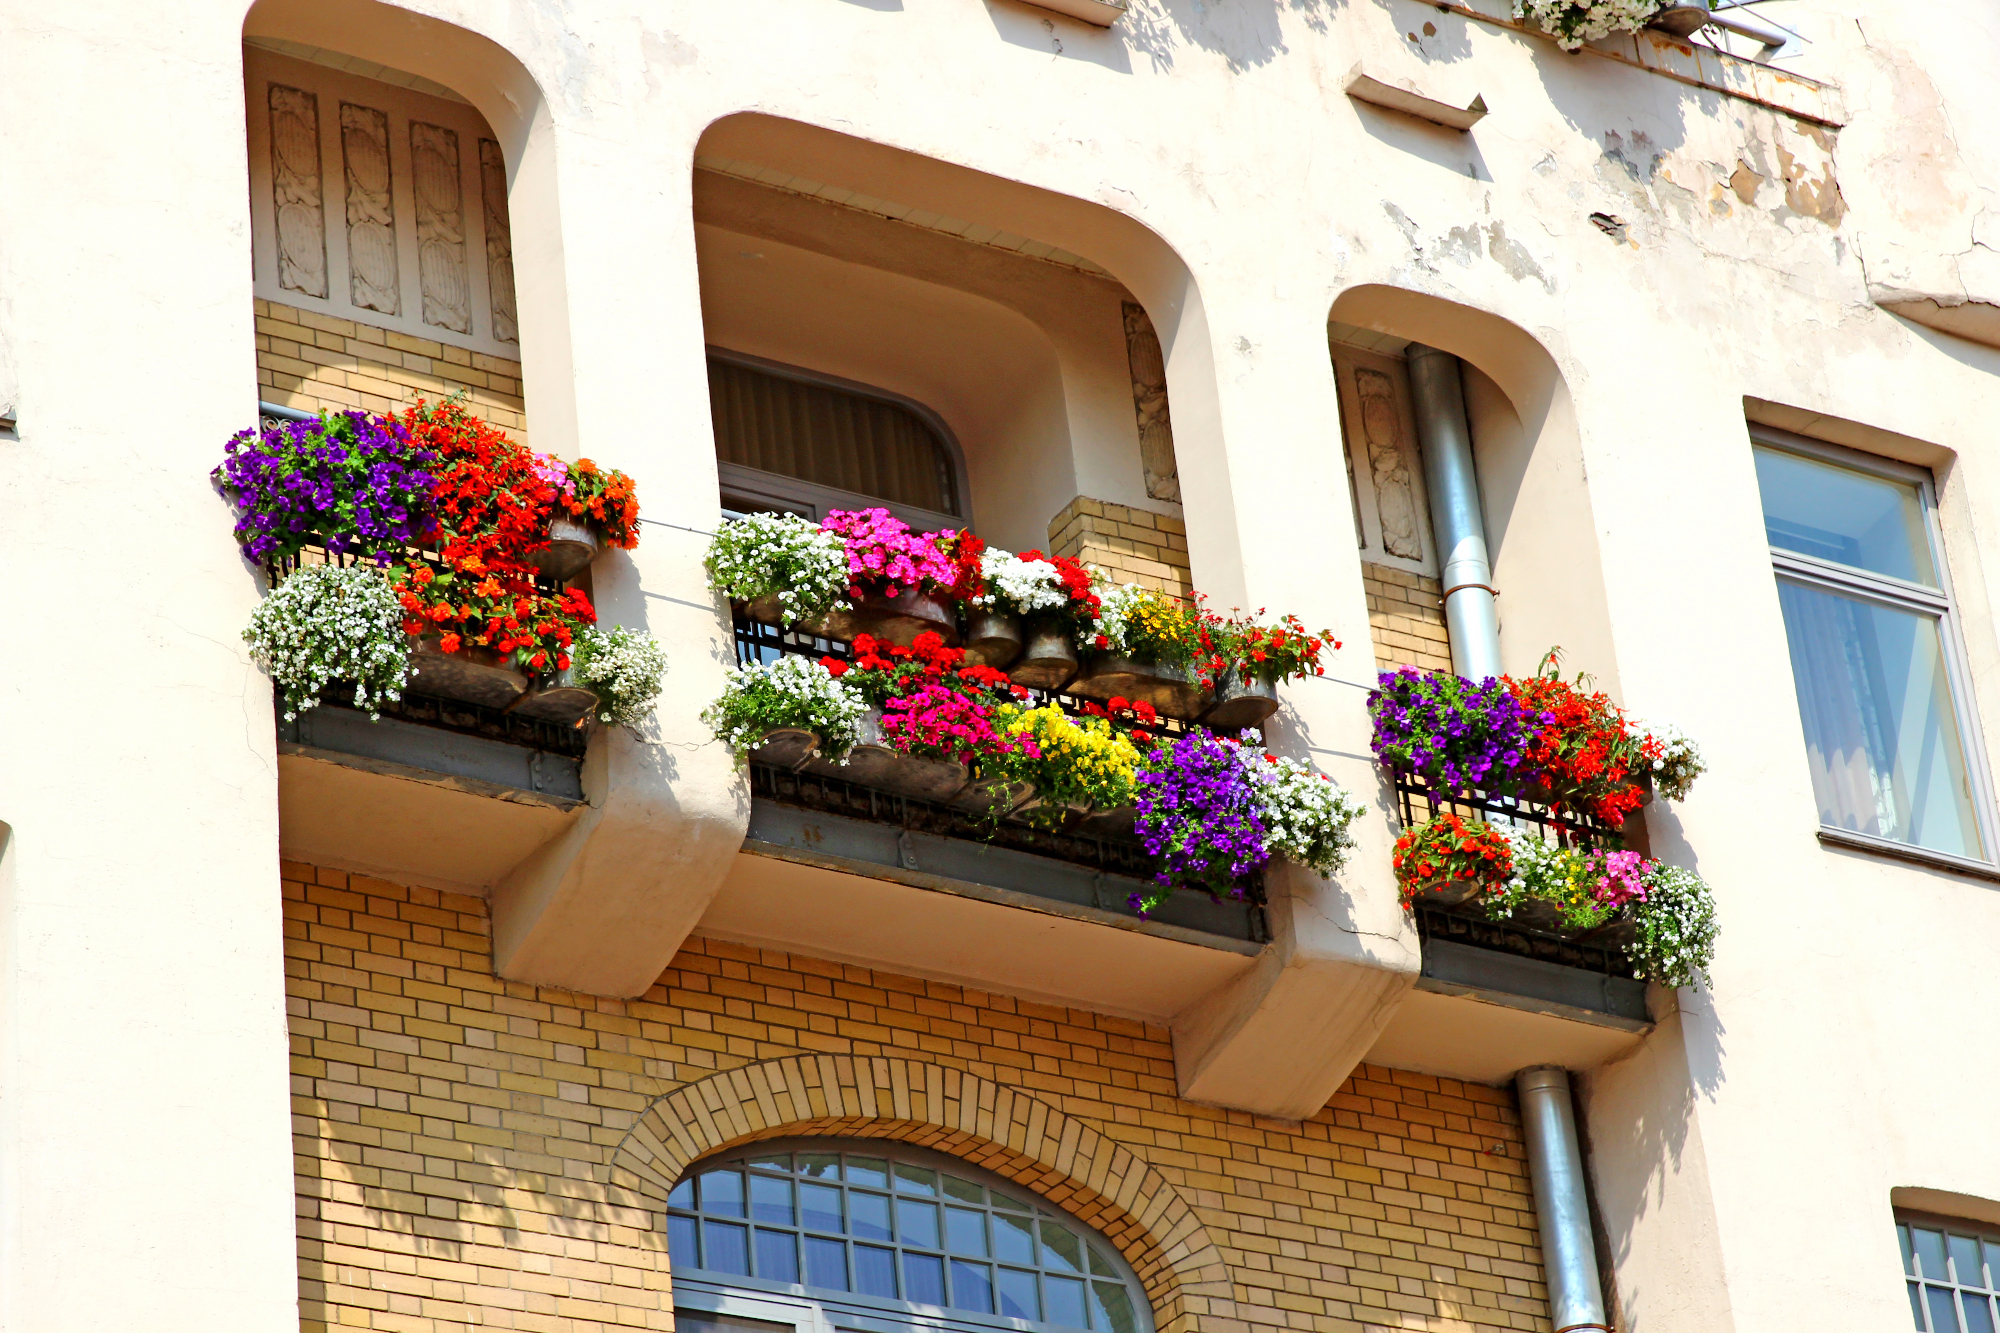 Pomlad in balkonske rože